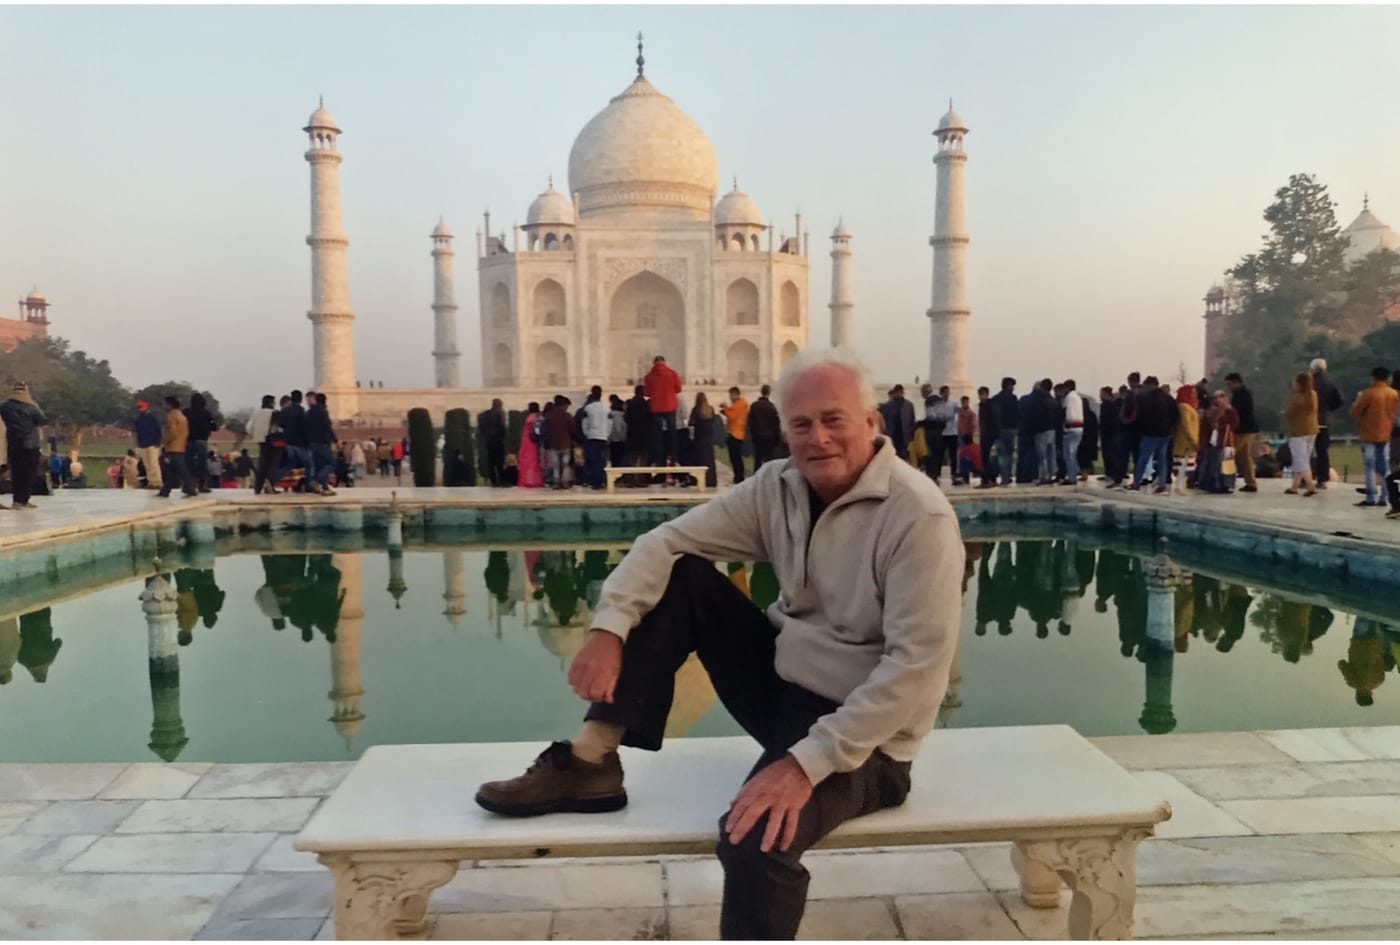 David at the Taj Mahal